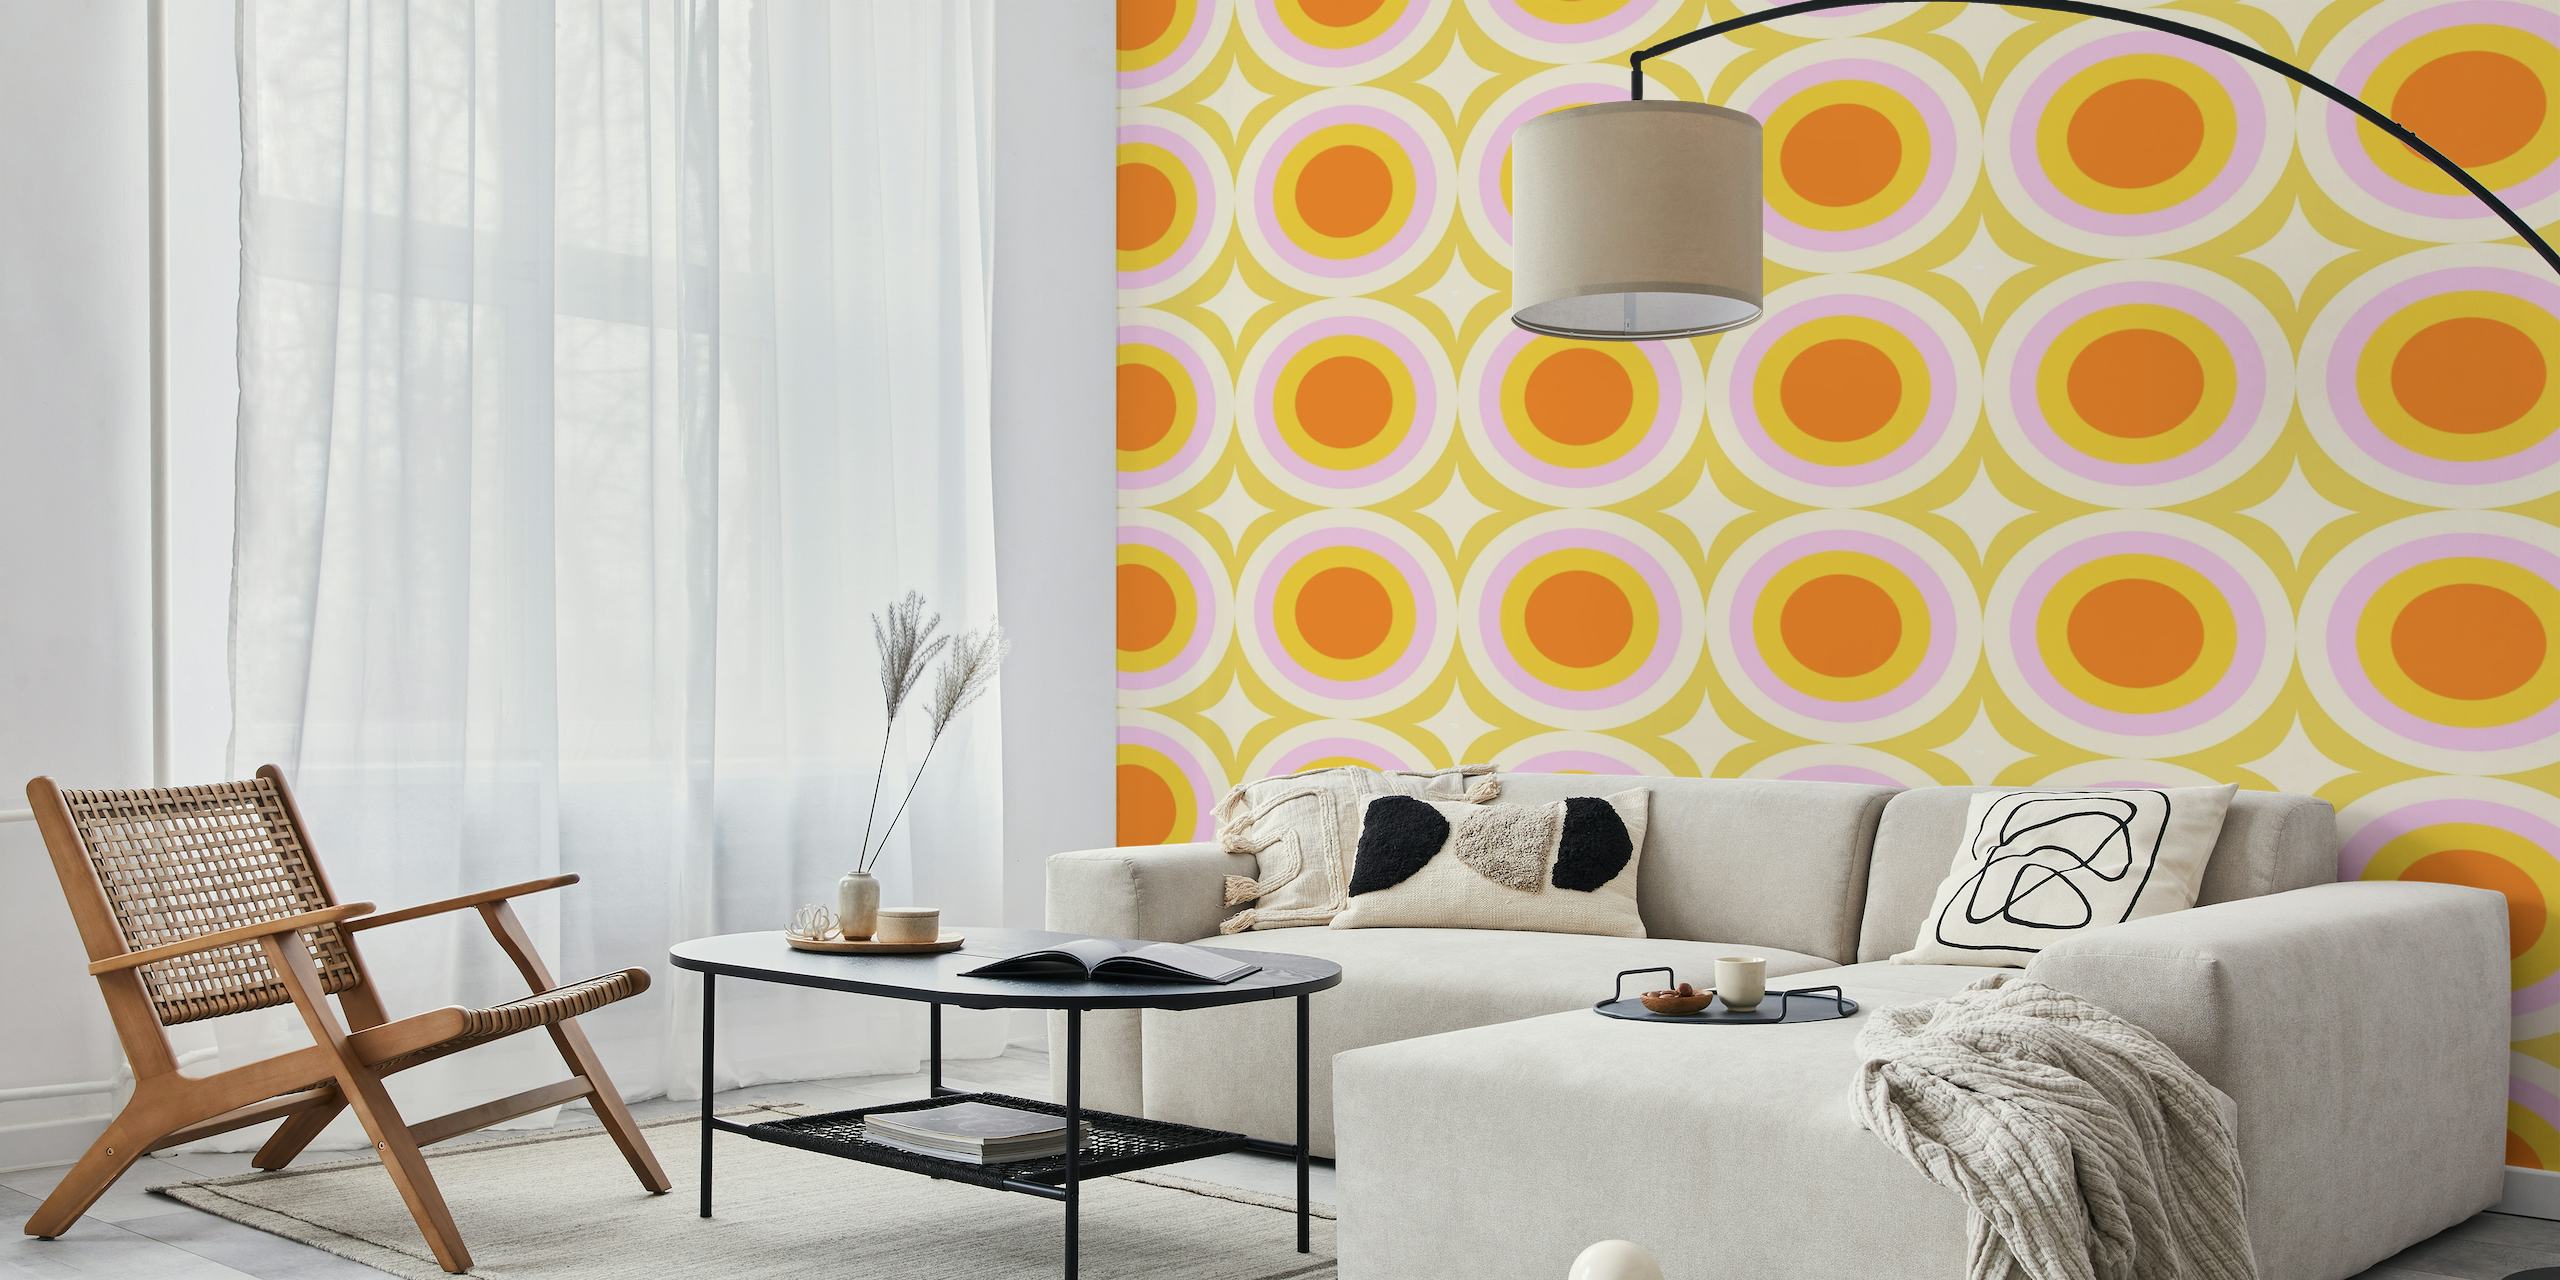 Groovy Dots Sage vægmaleri med orange og hvide cirkulære mønstre på en lysegrøn baggrund